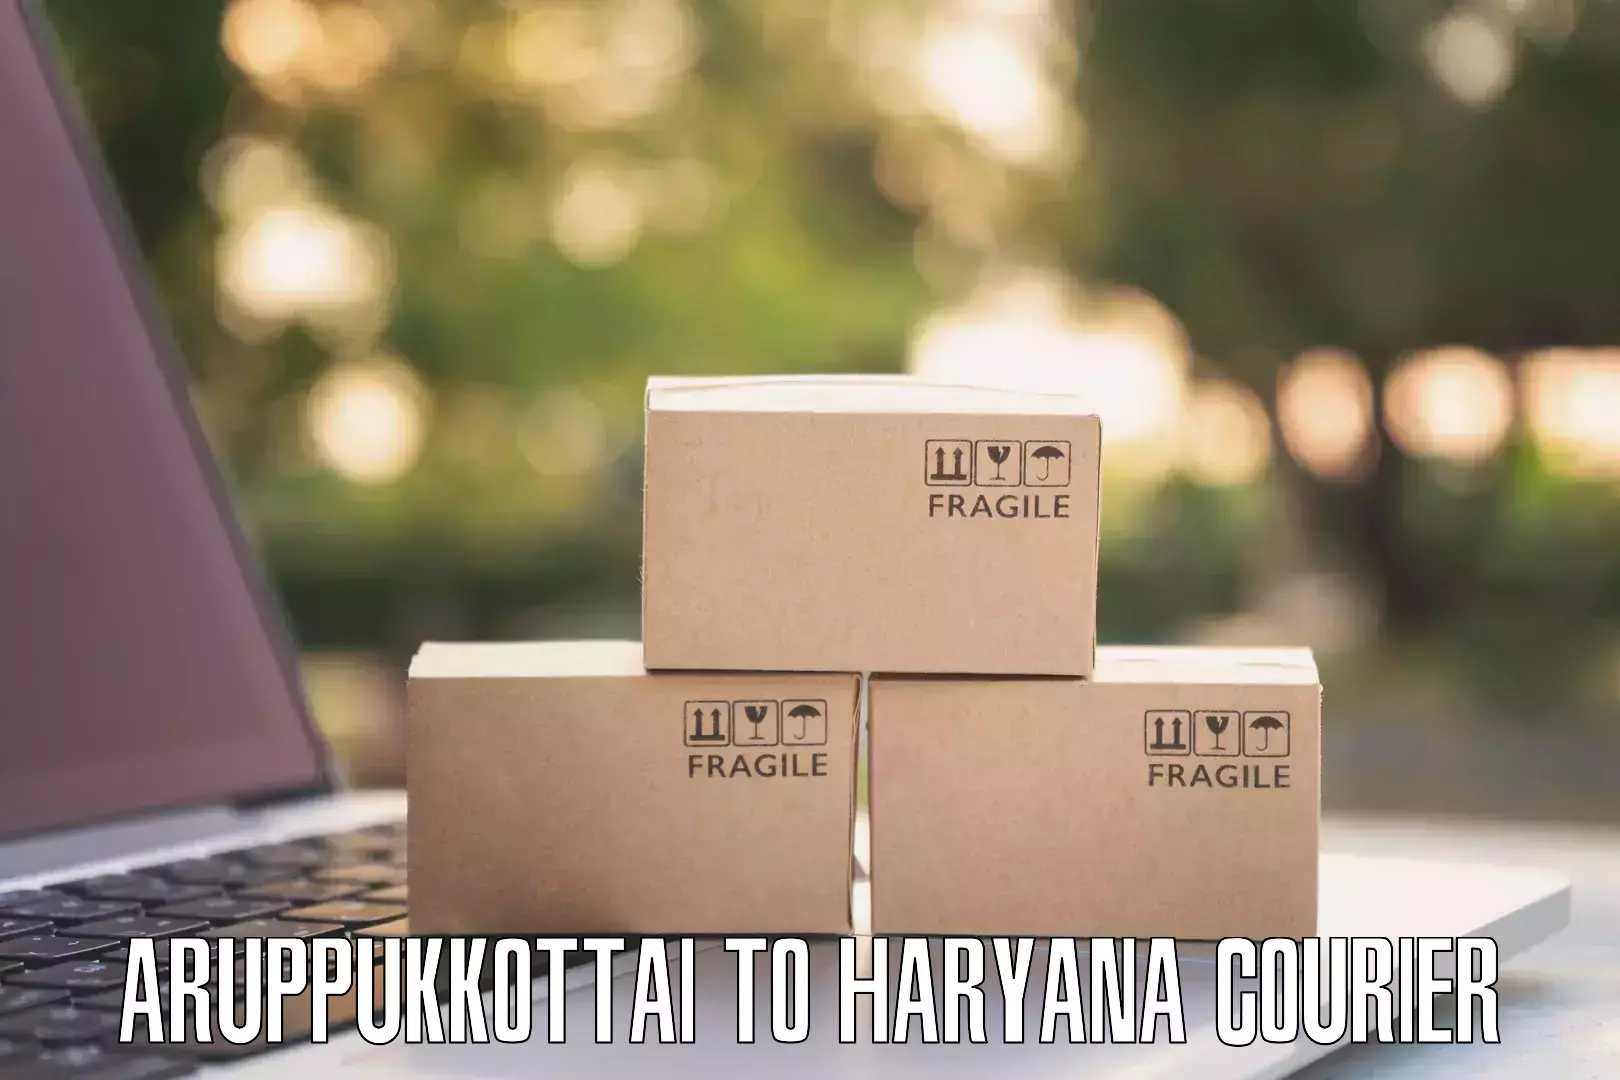 Secure package delivery Aruppukkottai to IIIT Sonepat